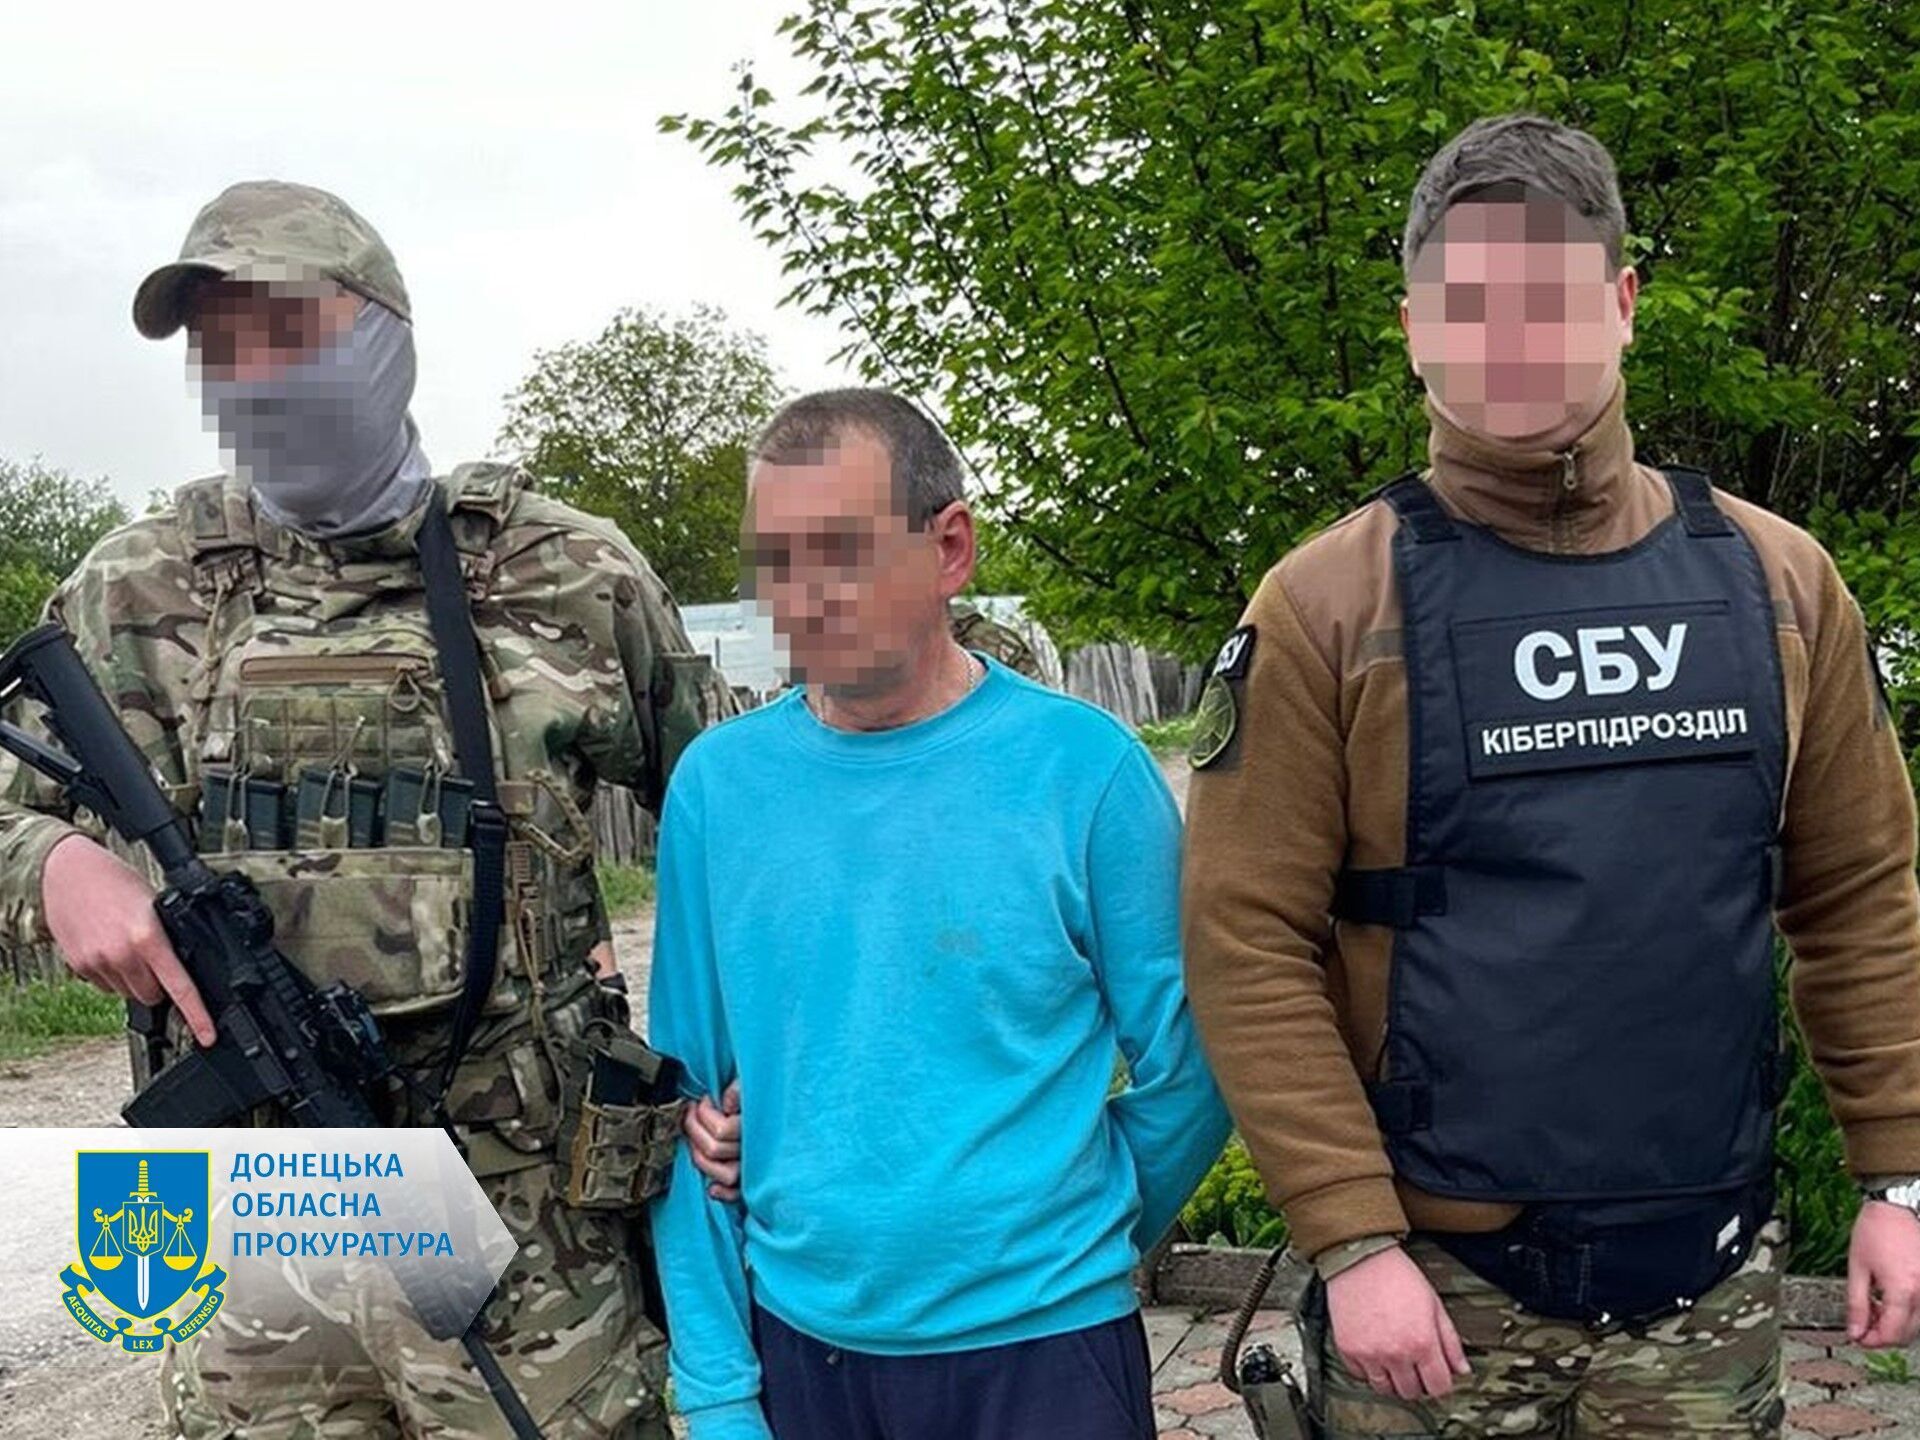 СБУ задержала информатора "вагнеровцев", который шпионил за военными аэродромами в Донецкой области. Фото